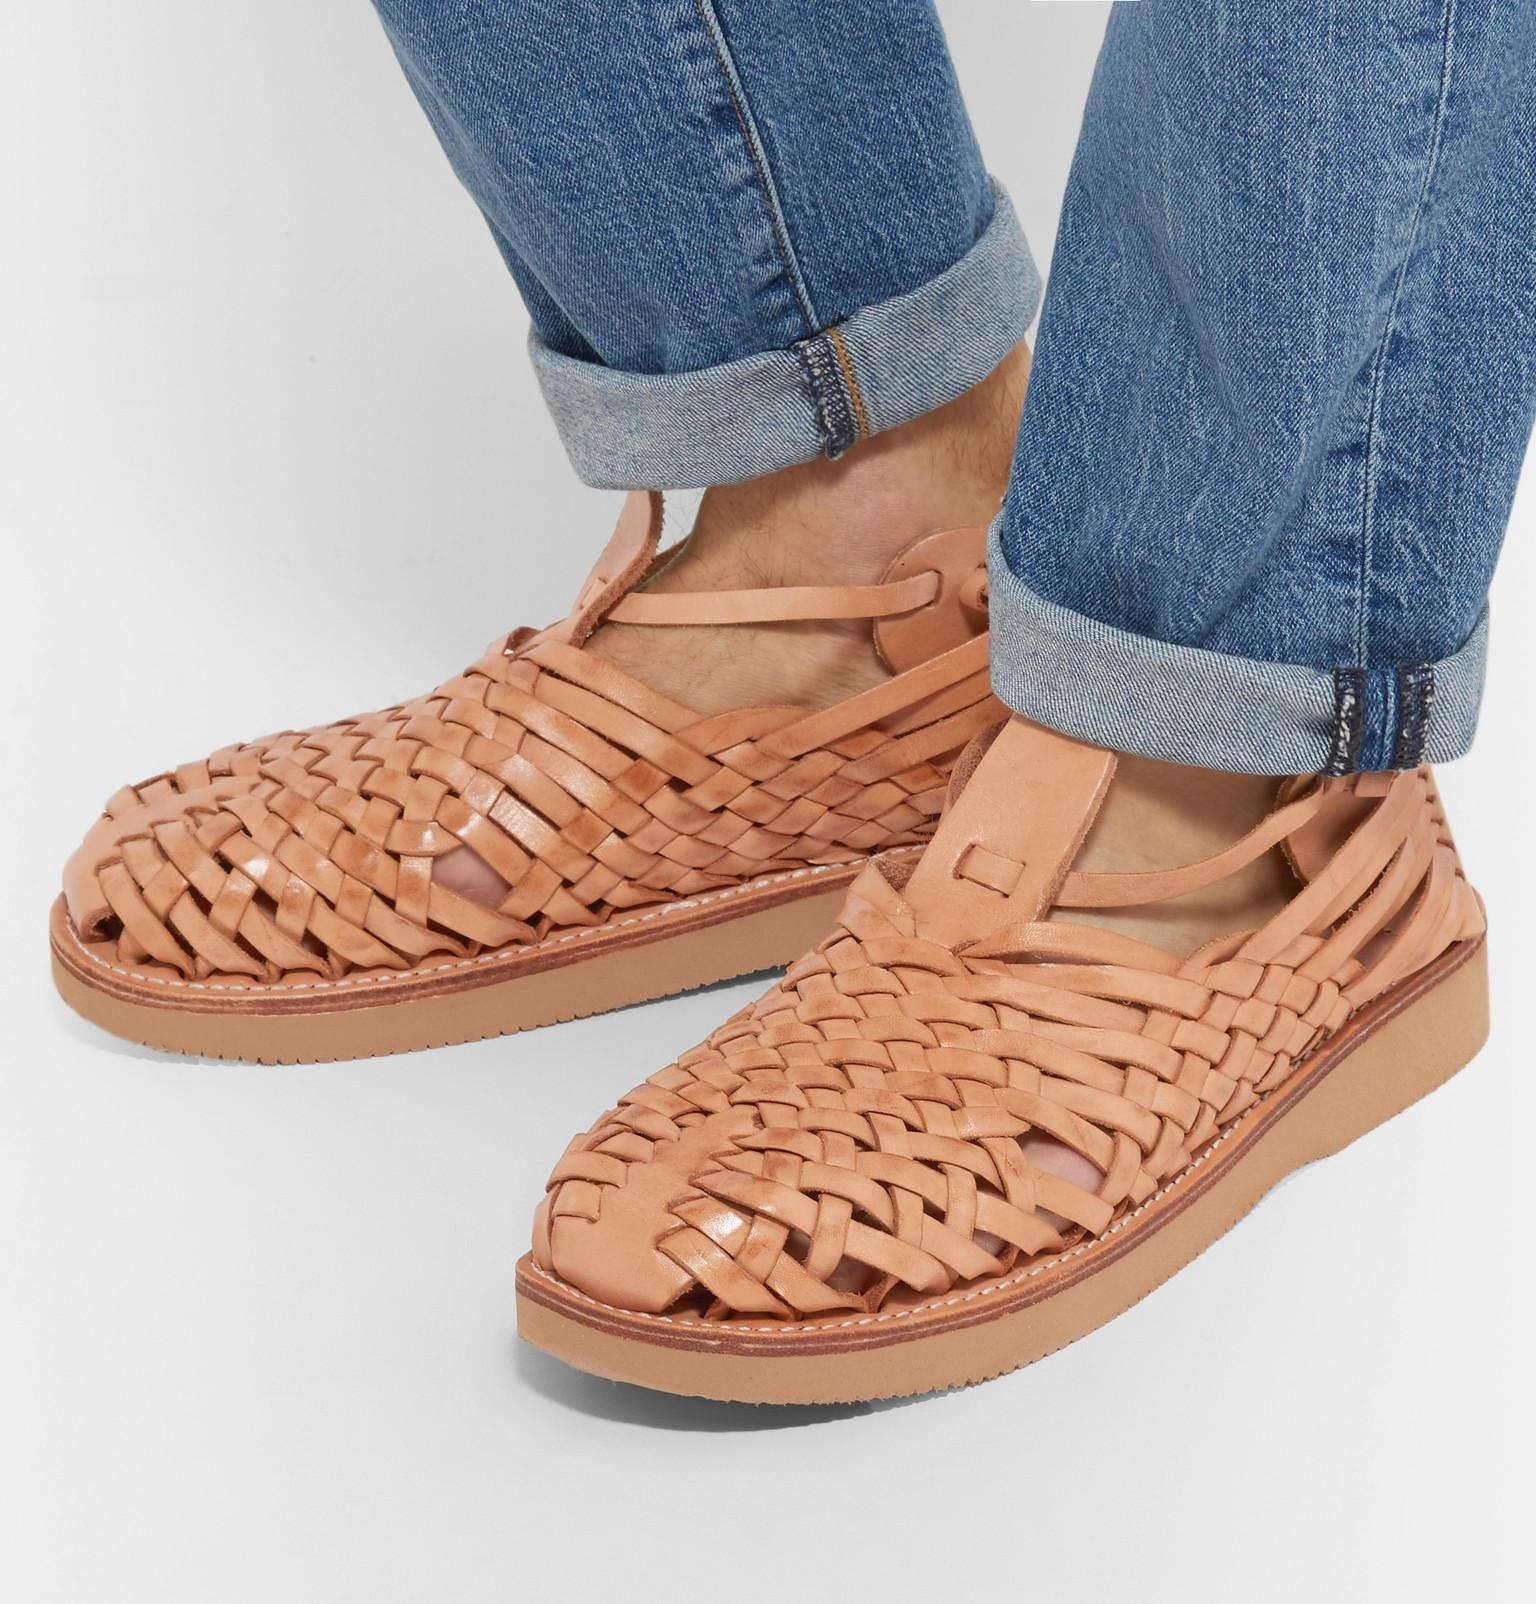 Yuketen Crus Woven Leather Sandals for Men | Lyst